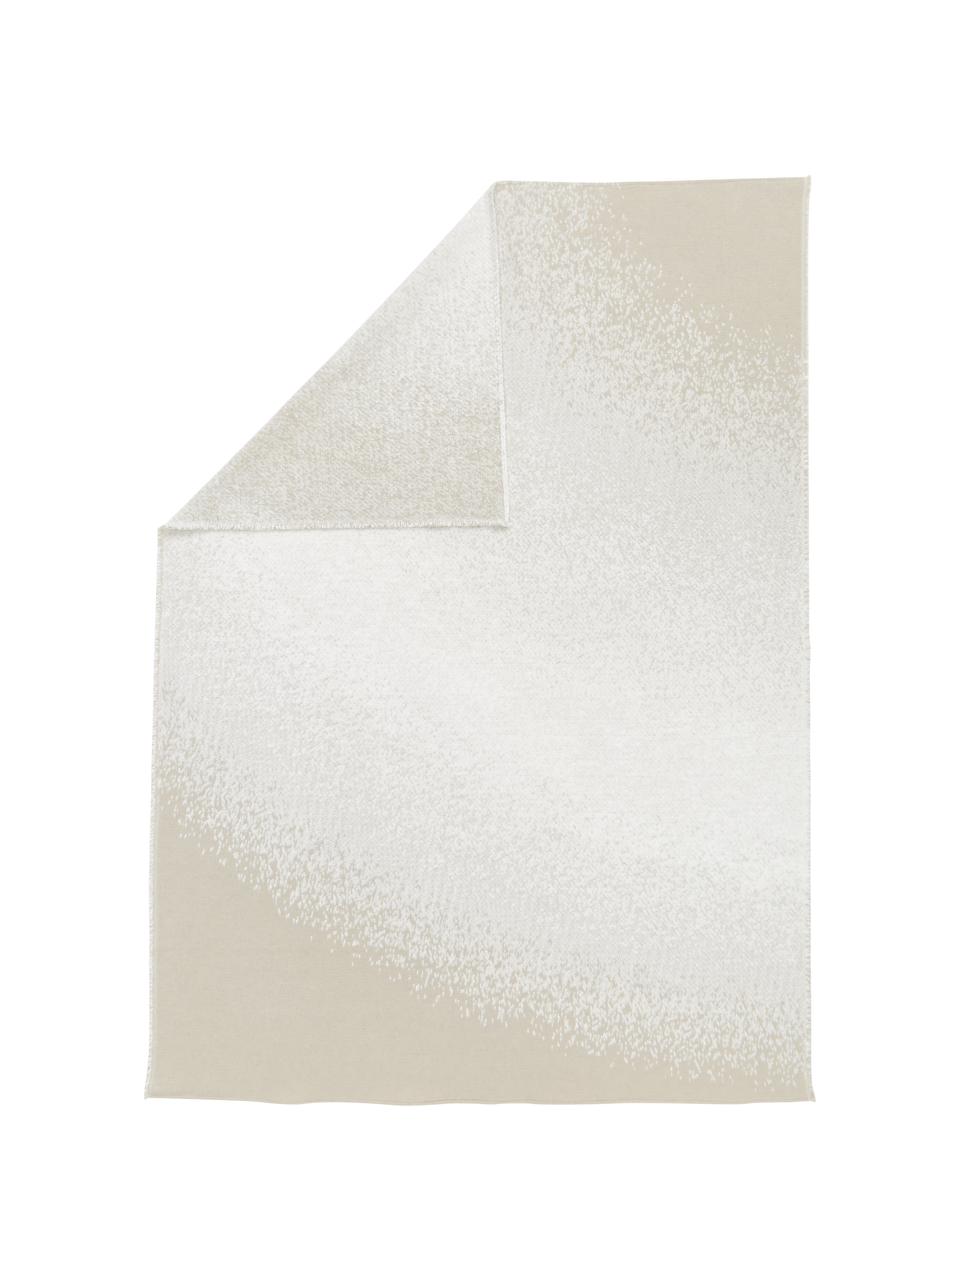 Coperta in cotone con gradiente color crema/beige Deco, 85% cotone, 15% poliacrilico, Bianco crema, beige, Larg. 130 x Lung. 200 cm